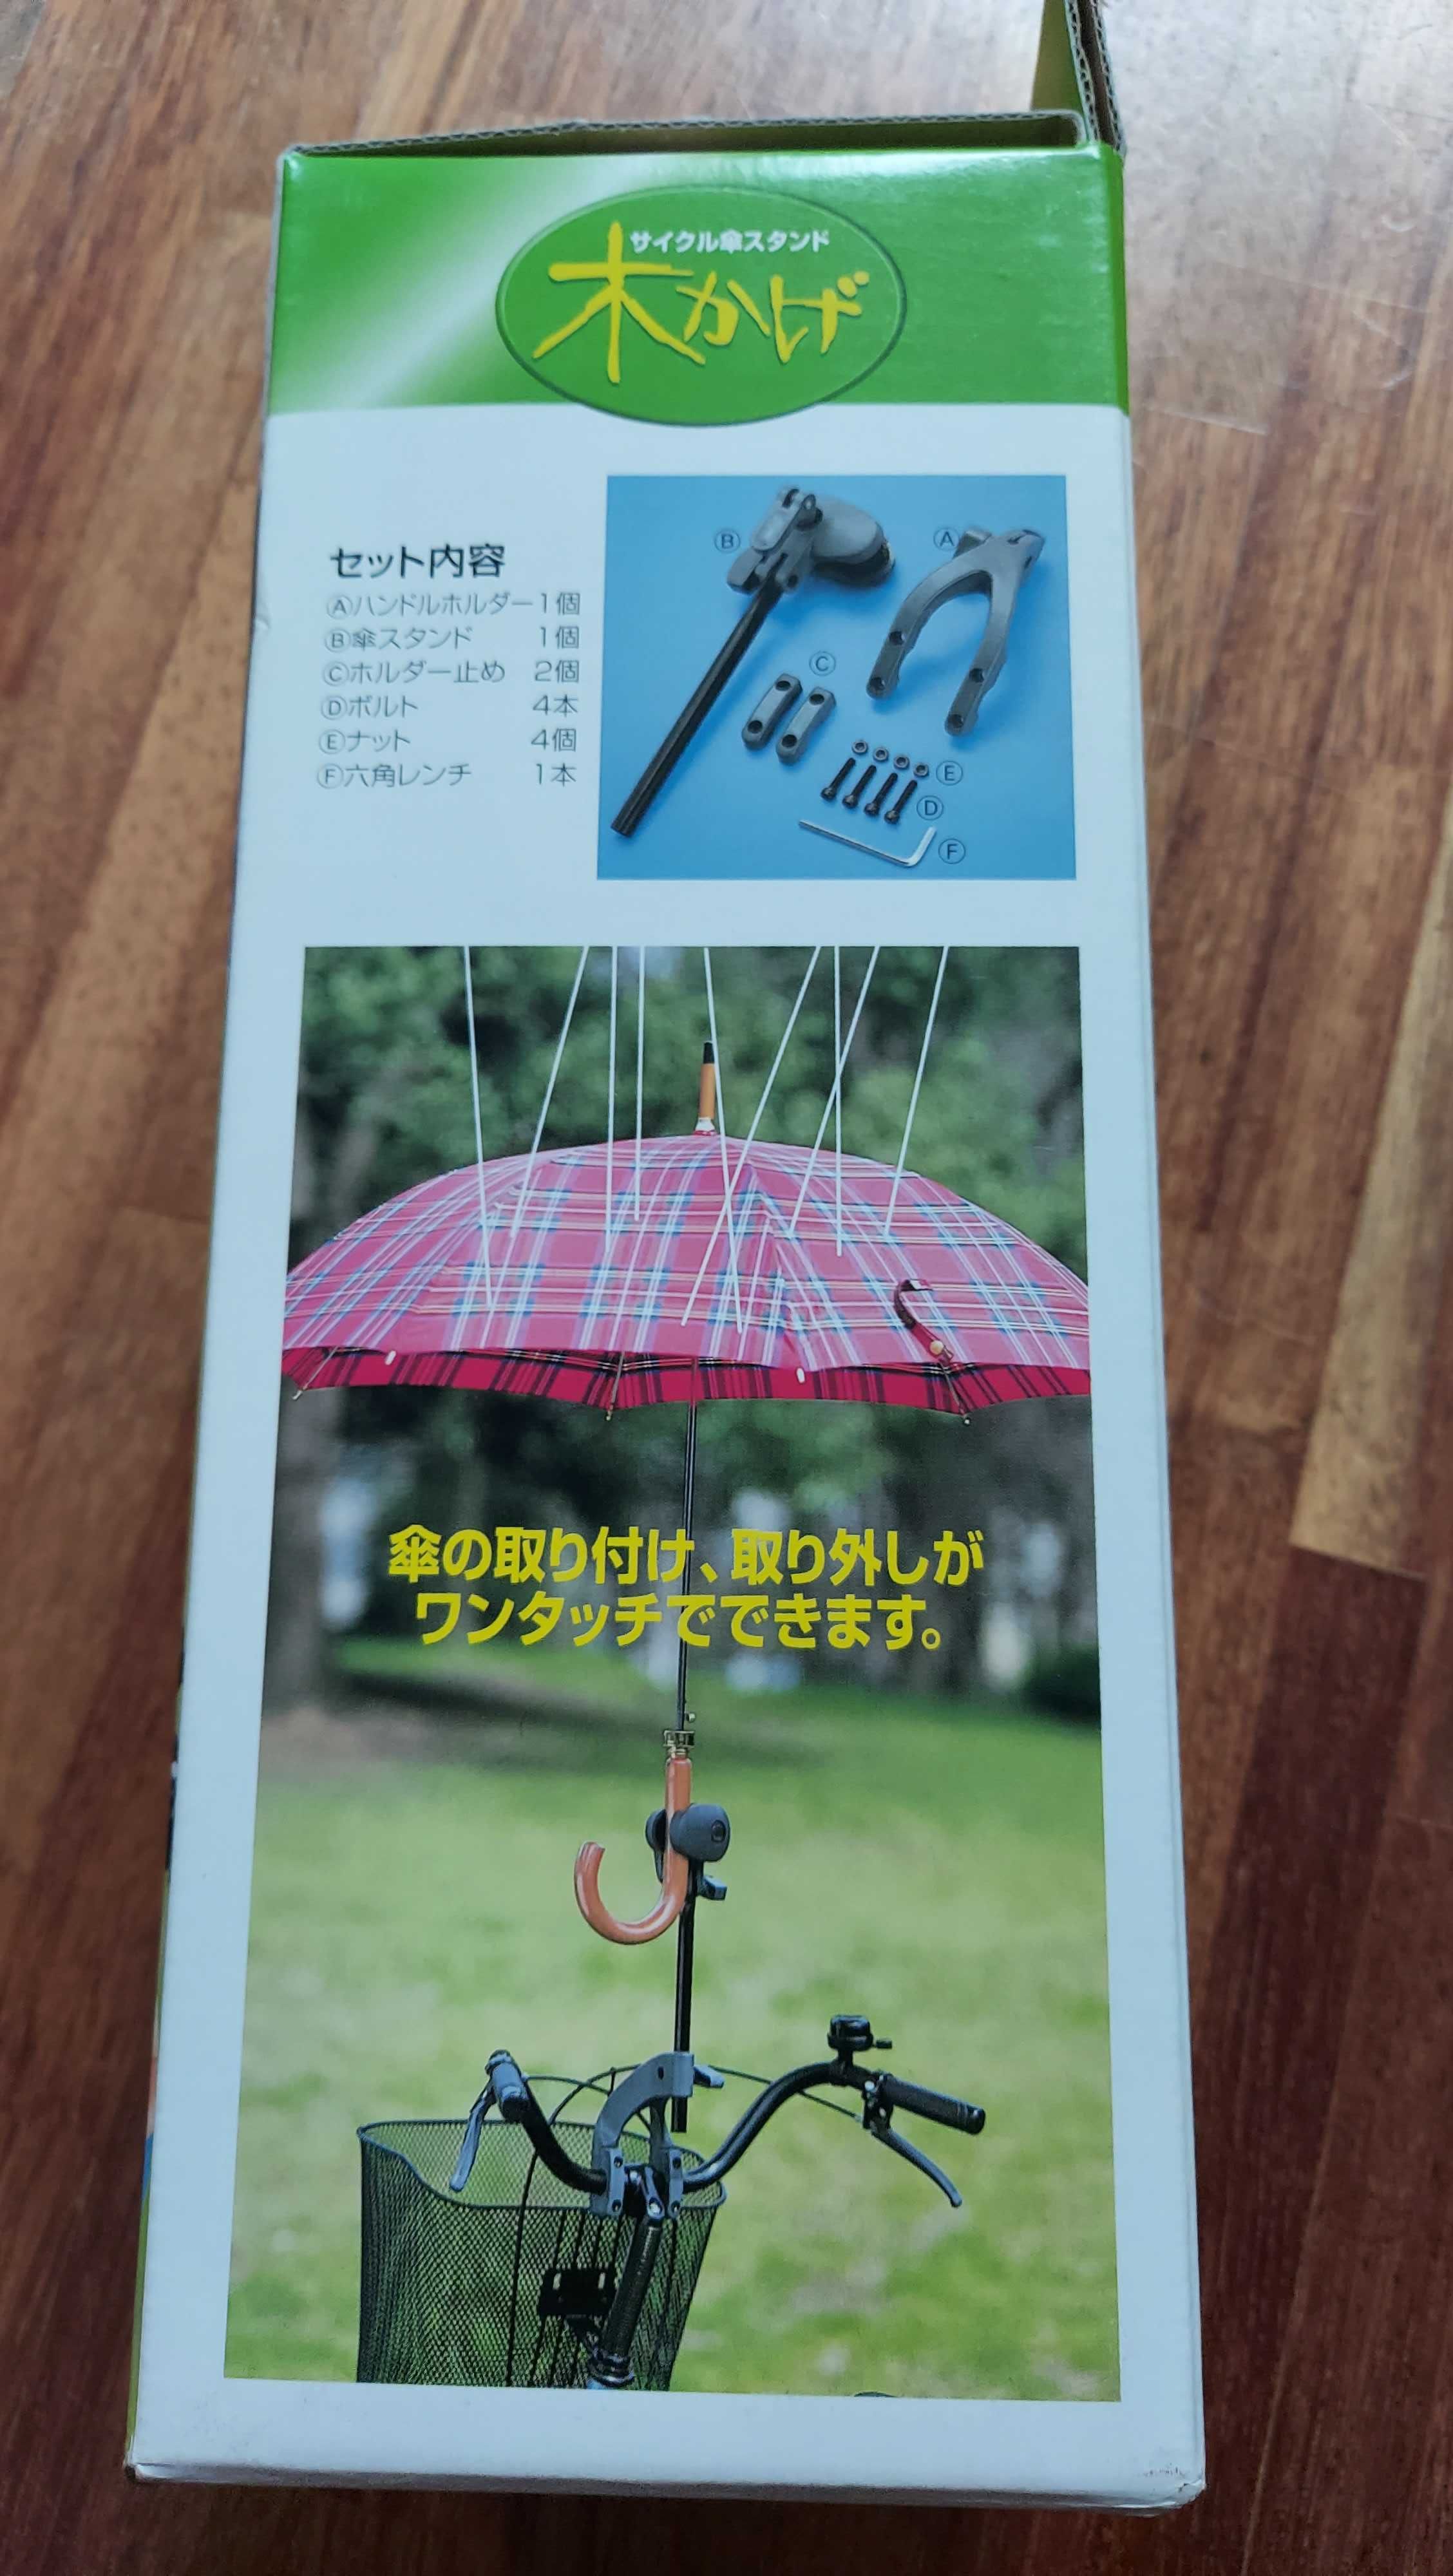 Uchwyt do roweru na parasol! Jedyny oryginalny z Japonii super prezent  Warszawa Wola • OLX.pl